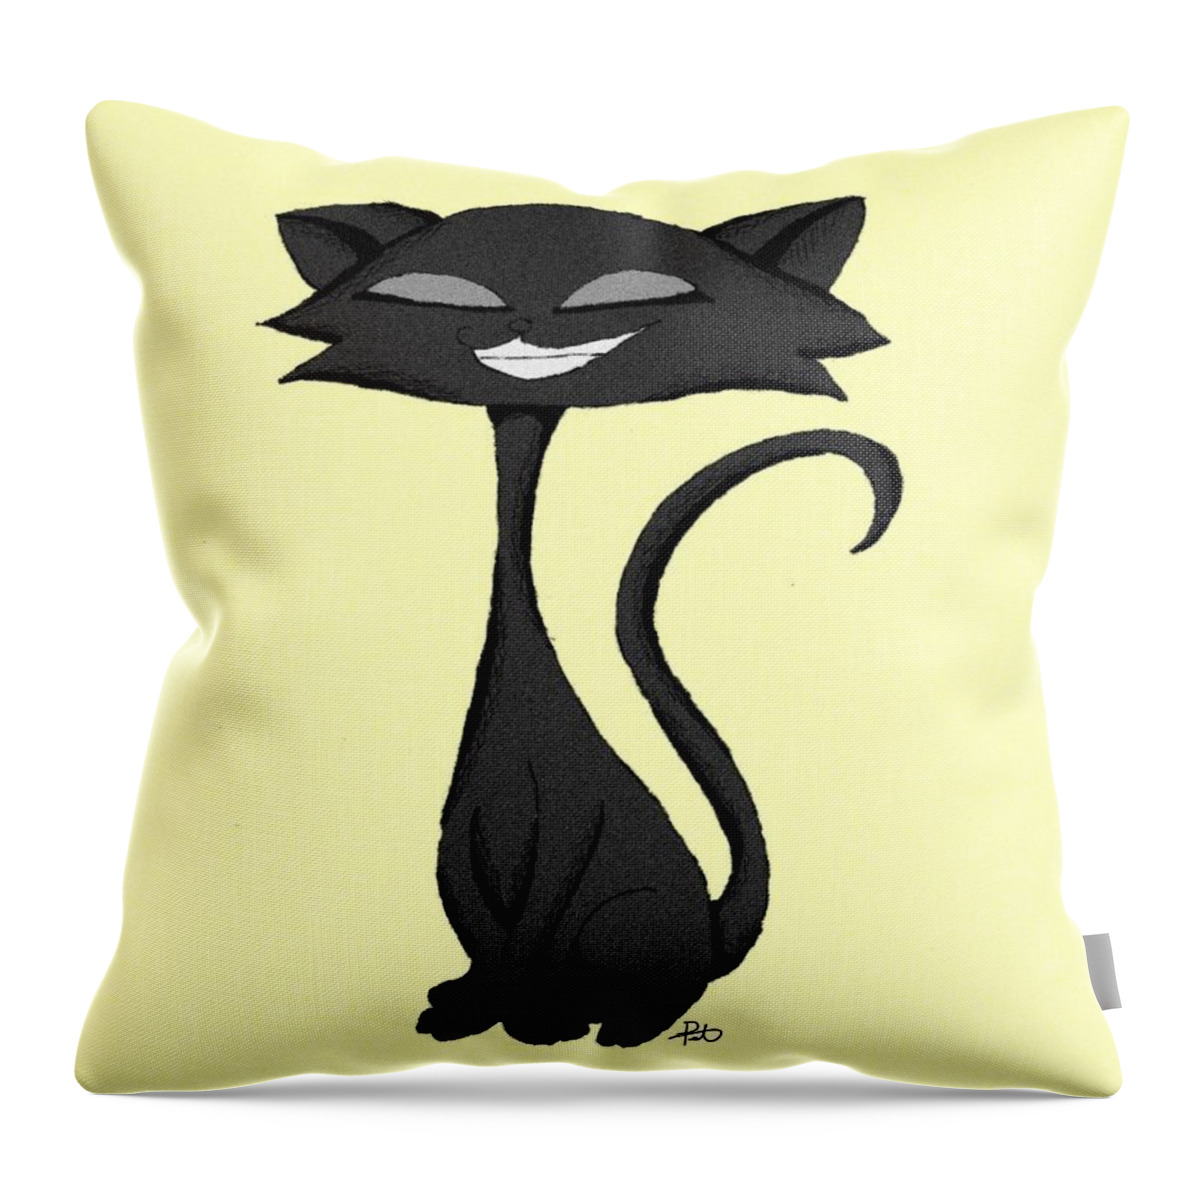 Animal Throw Pillow featuring the digital art Sleek Cat Chuckling by Pet Serrano